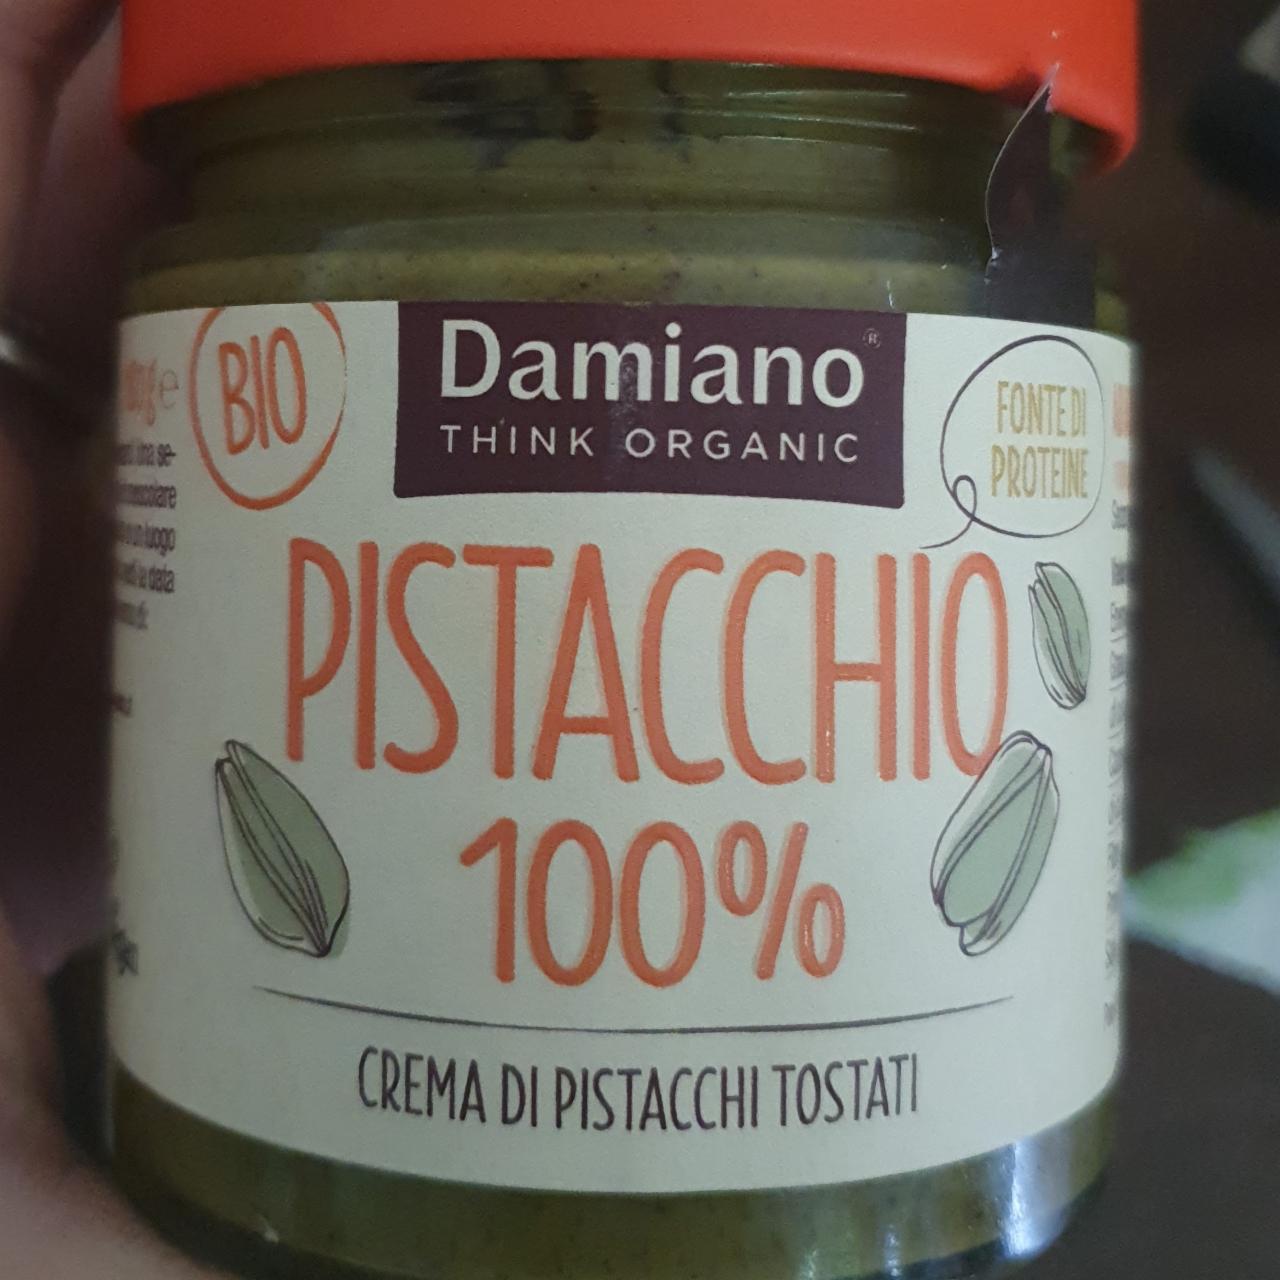 Fotografie - Pistacchio 100% Crema di pistacchi tostati Damiano